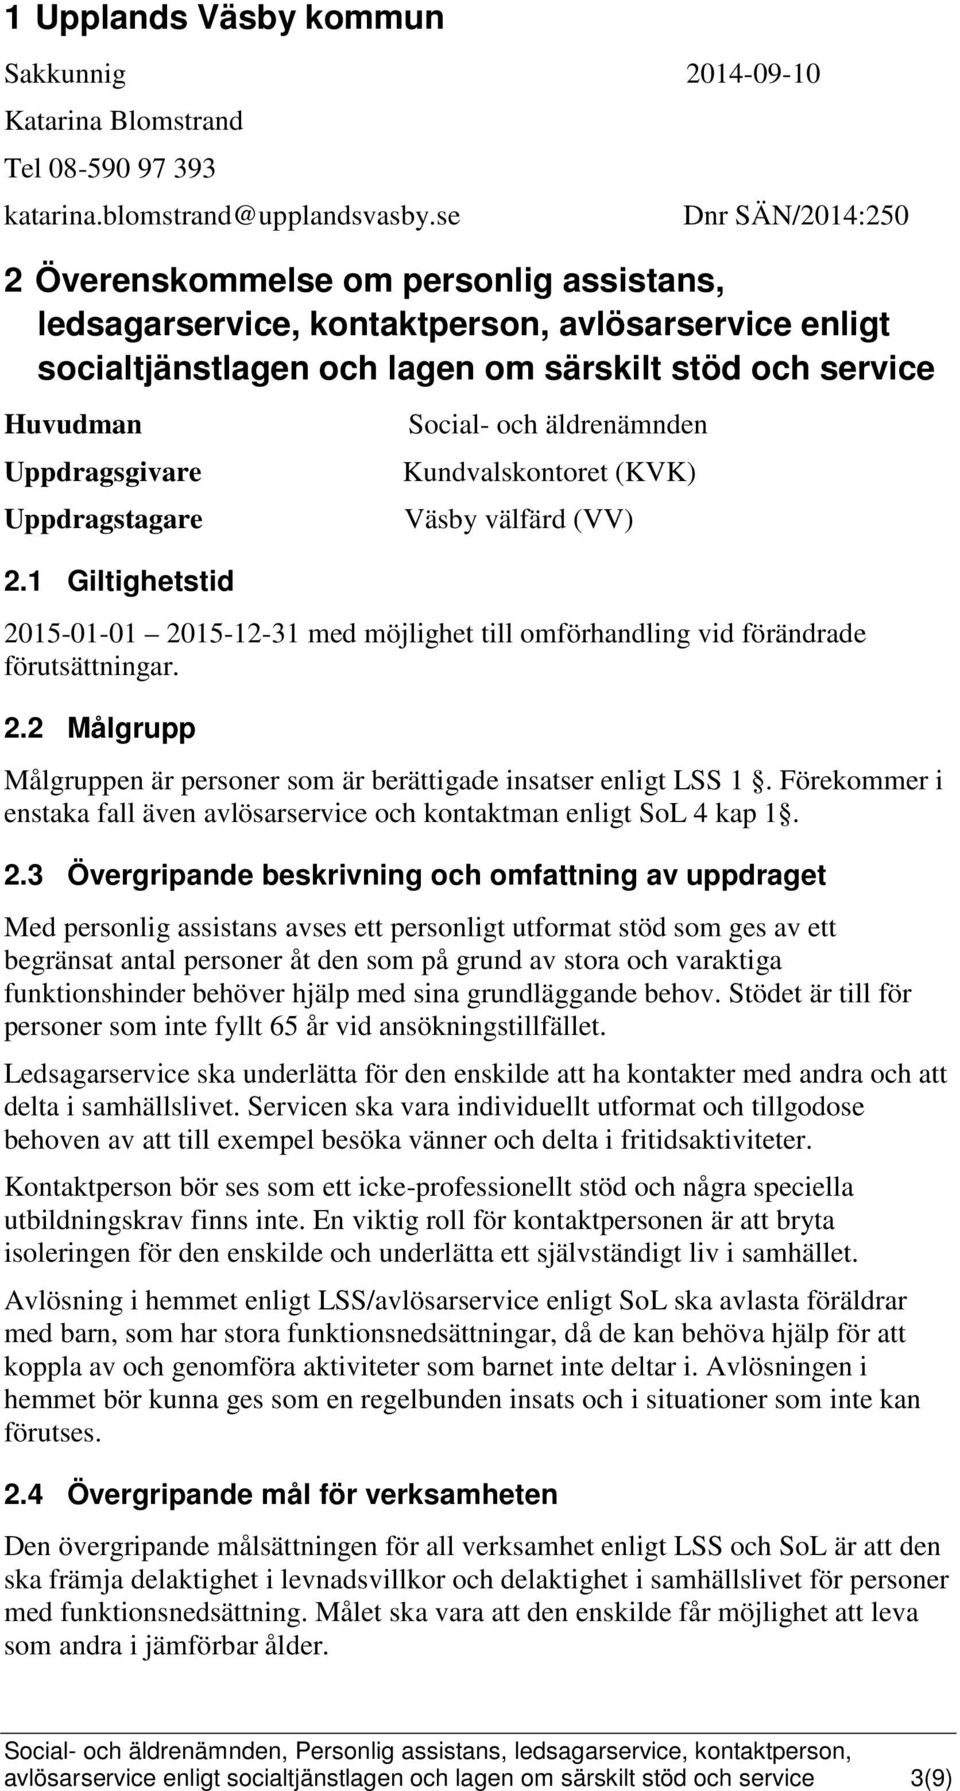 Uppdragstagare 2.1 Giltighetstid Social- och äldrenämnden Kundvalskontoret (KVK) Väsby välfärd (VV) 2015-01-01 2015-12-31 med möjlighet till omförhandling vid förändrade förutsättningar. 2.2 Målgrupp Målgruppen är personer som är berättigade insatser enligt LSS 1.